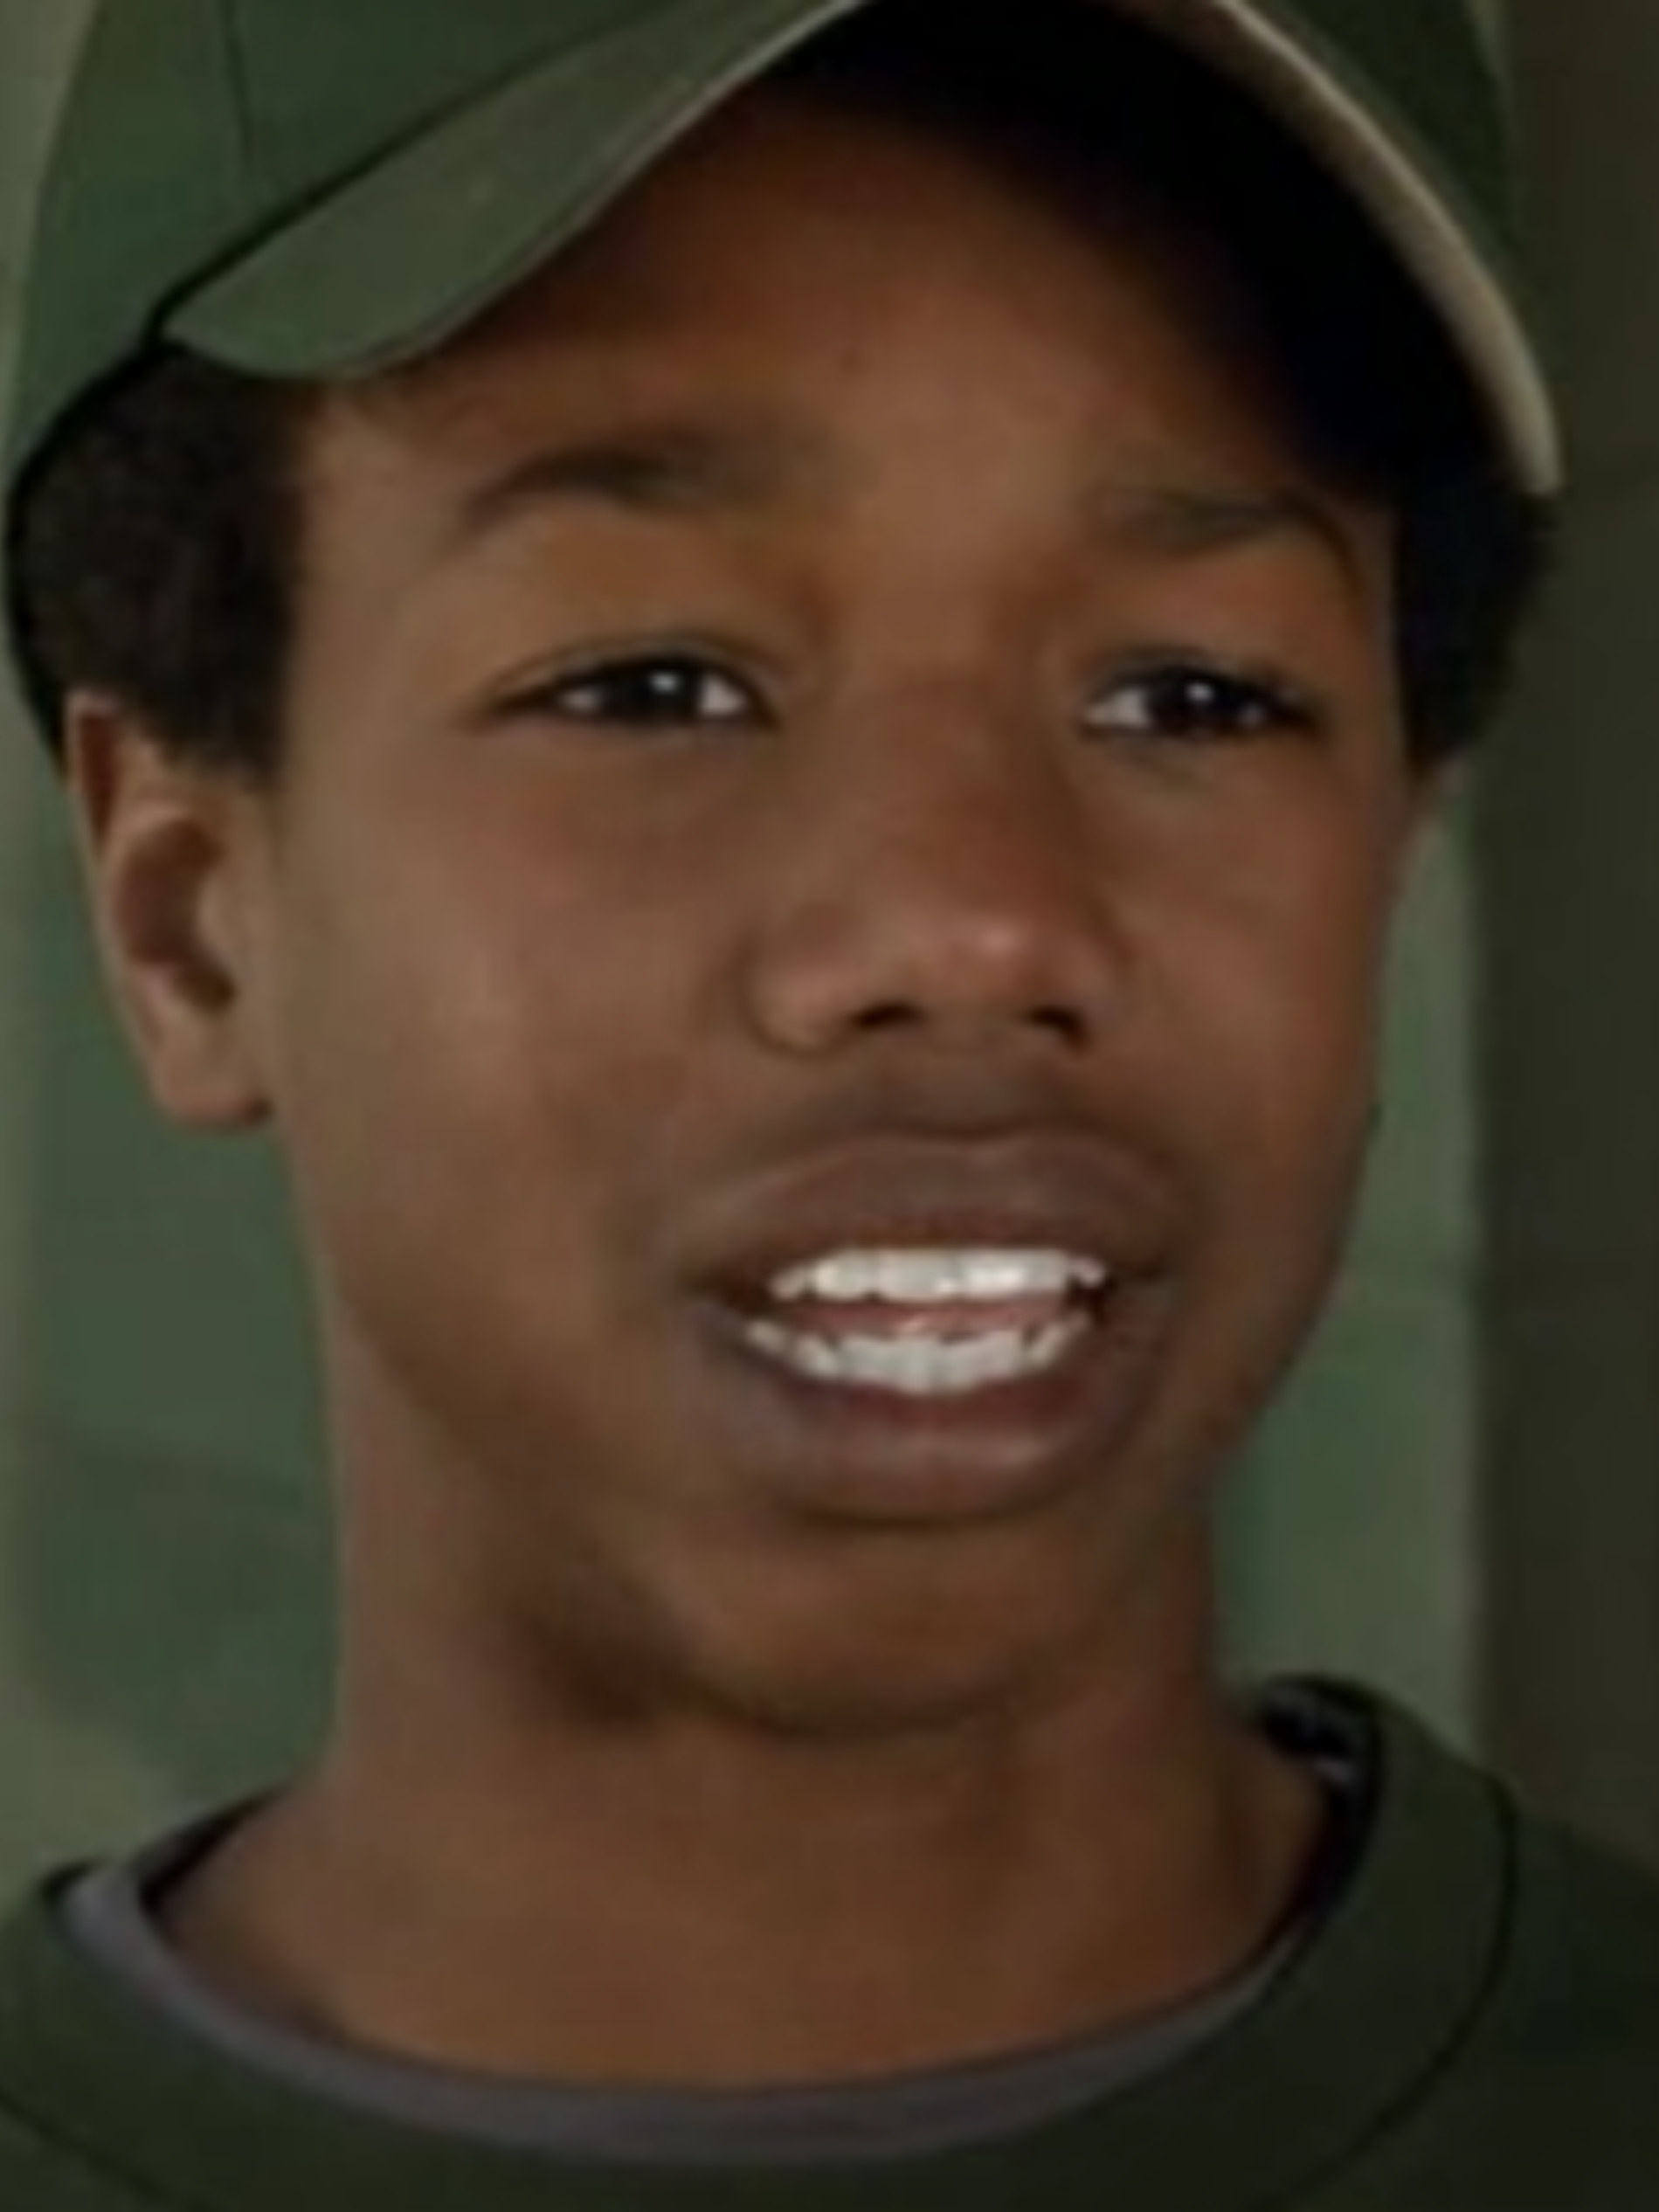 Jordan as a kid, wearing a baseball cap